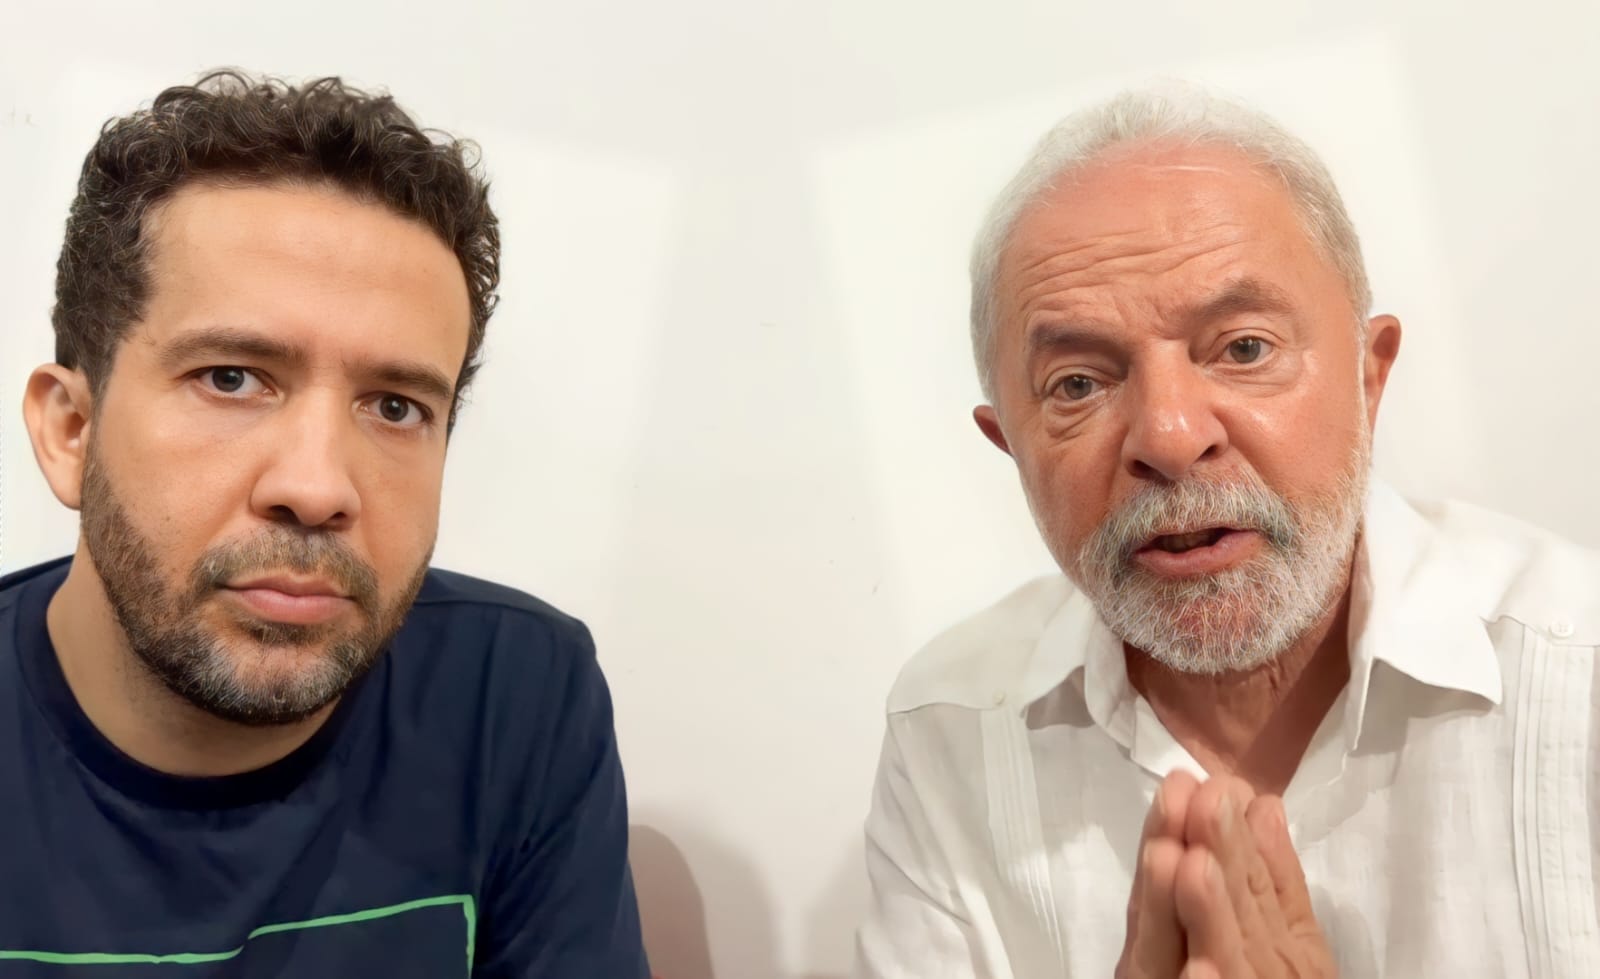 Eleições para presidente: Na live com Janones, Lula garante aumento real do salário mínimo e auxílio de R$ 600